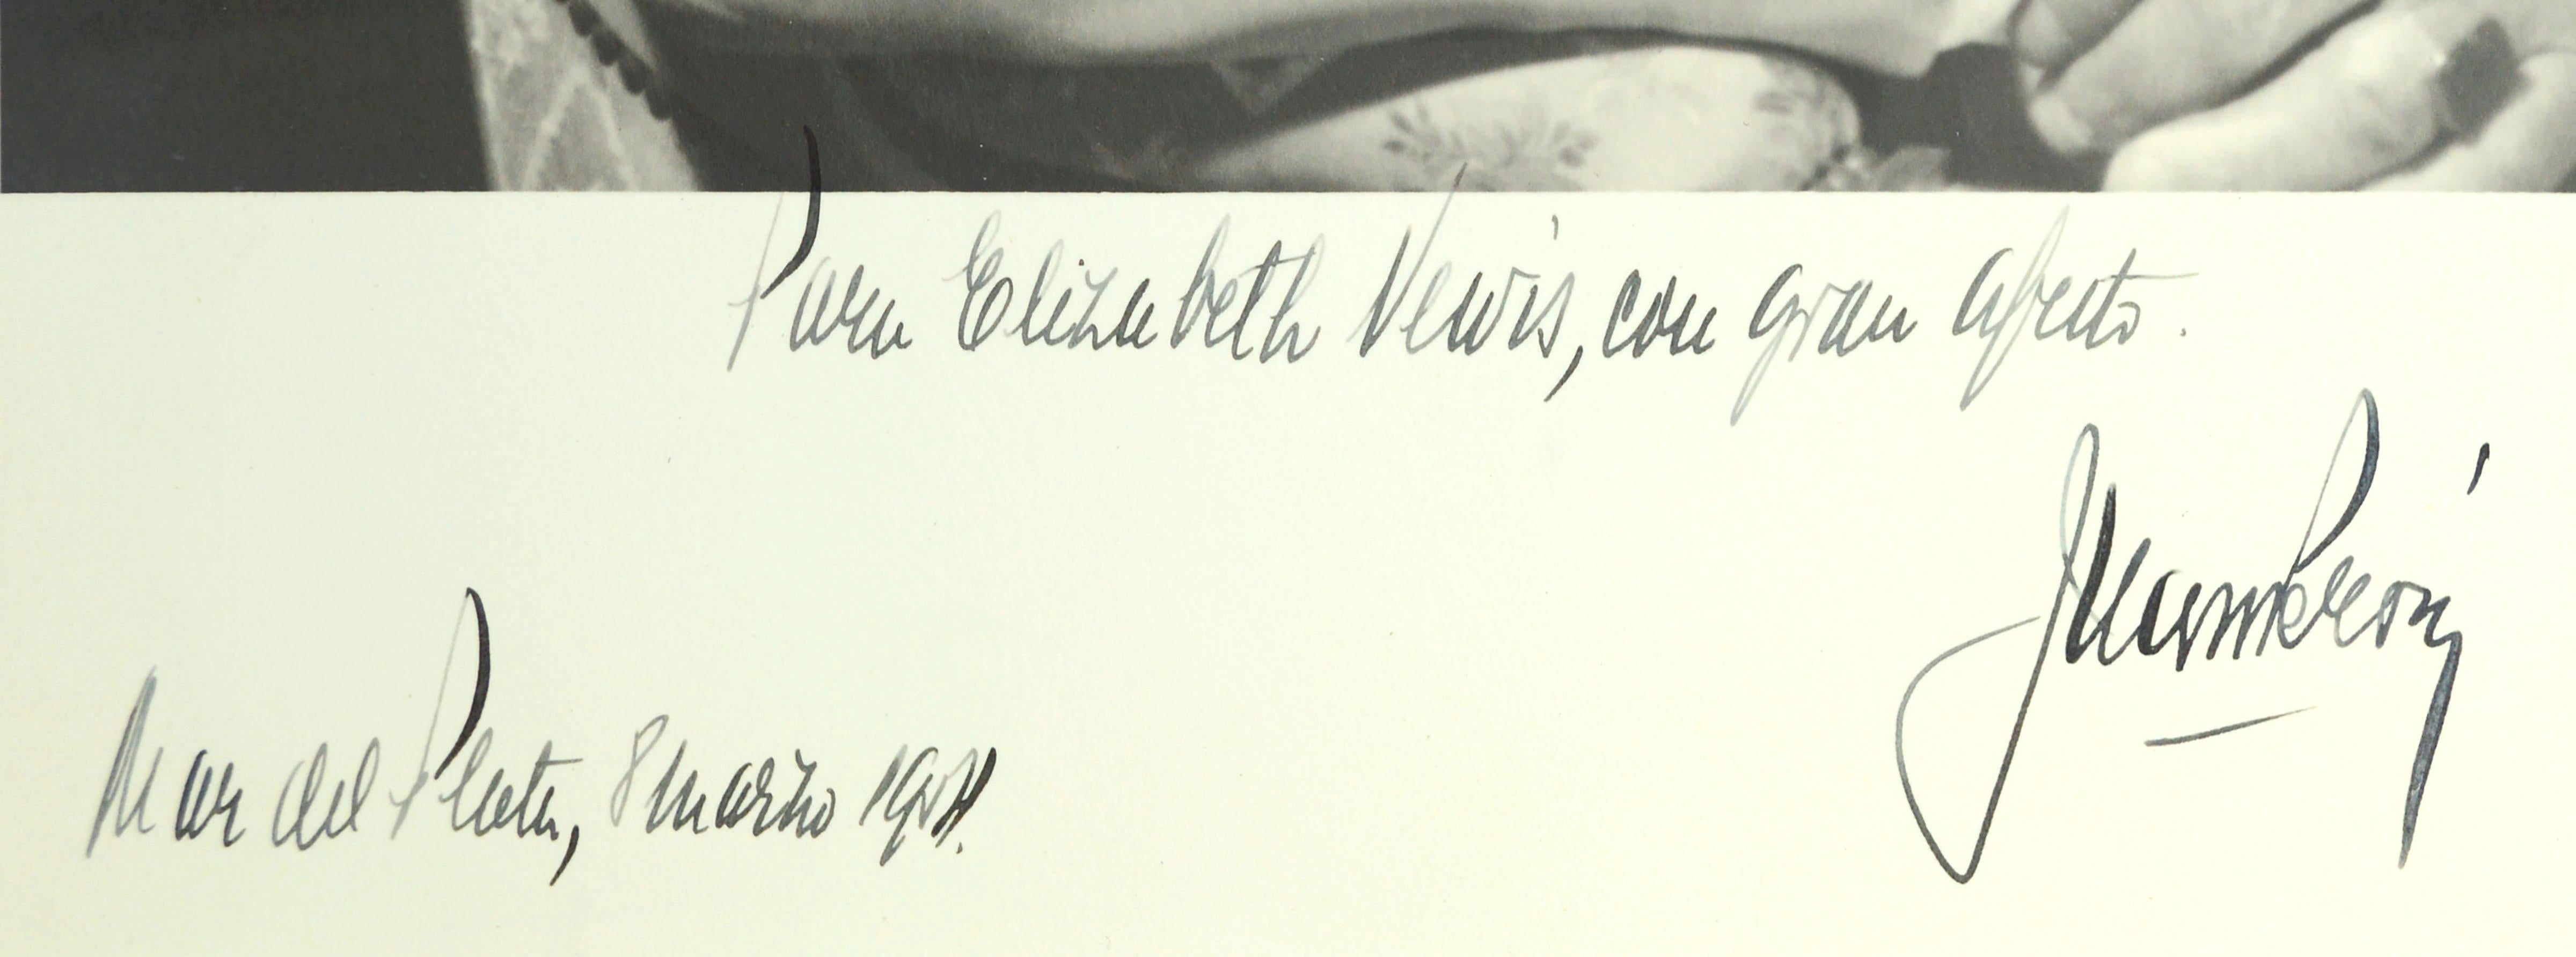 Seltenes, signiertes Original-Schwarz-Weiß-Foto des argentinischen Präsidenten Juan Perón, das Elizabeth Lewis (Bess Huggins Lewis) von einem unbekannten Fotografen gewidmet wurde. Auf diesem Porträt trägt Juan Perón eine schwarze Armbinde zum